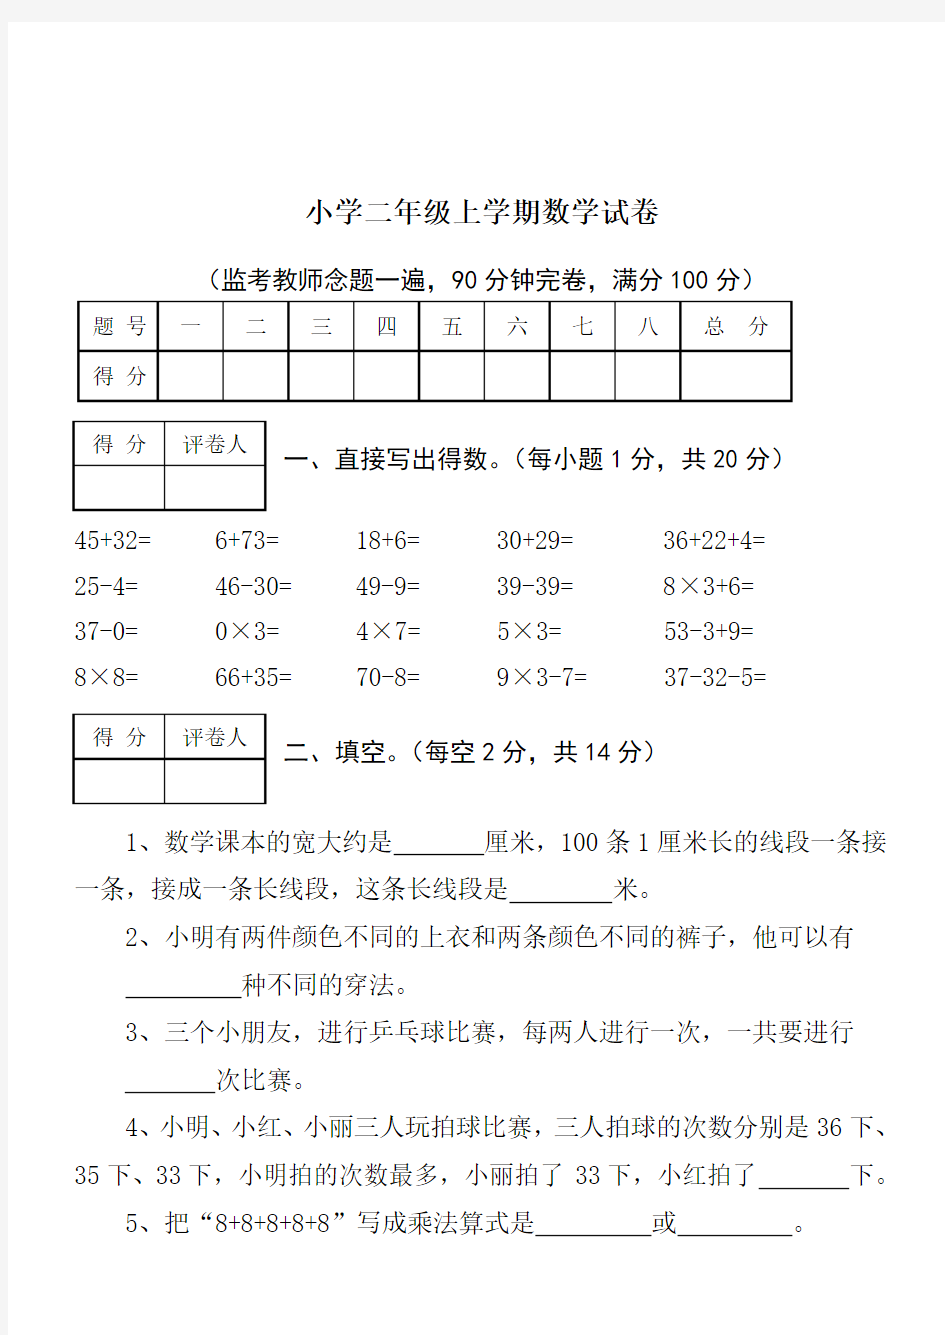 【北京市】小学二年级数学试卷(附图)